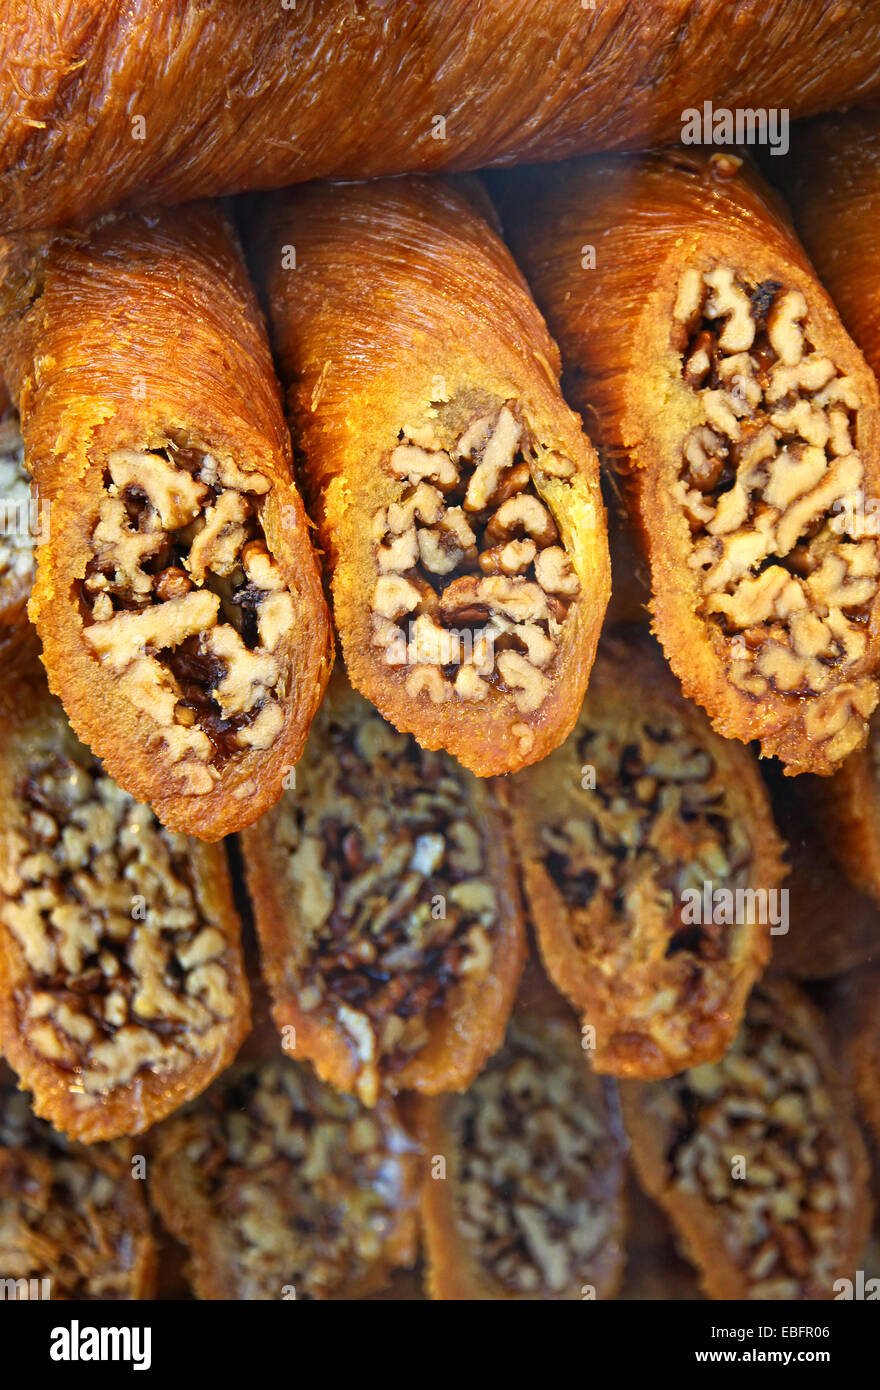 Close-up baklava turc traditionnel (desserts sucrés faits de pâte fine, noix et miel) Banque D'Images